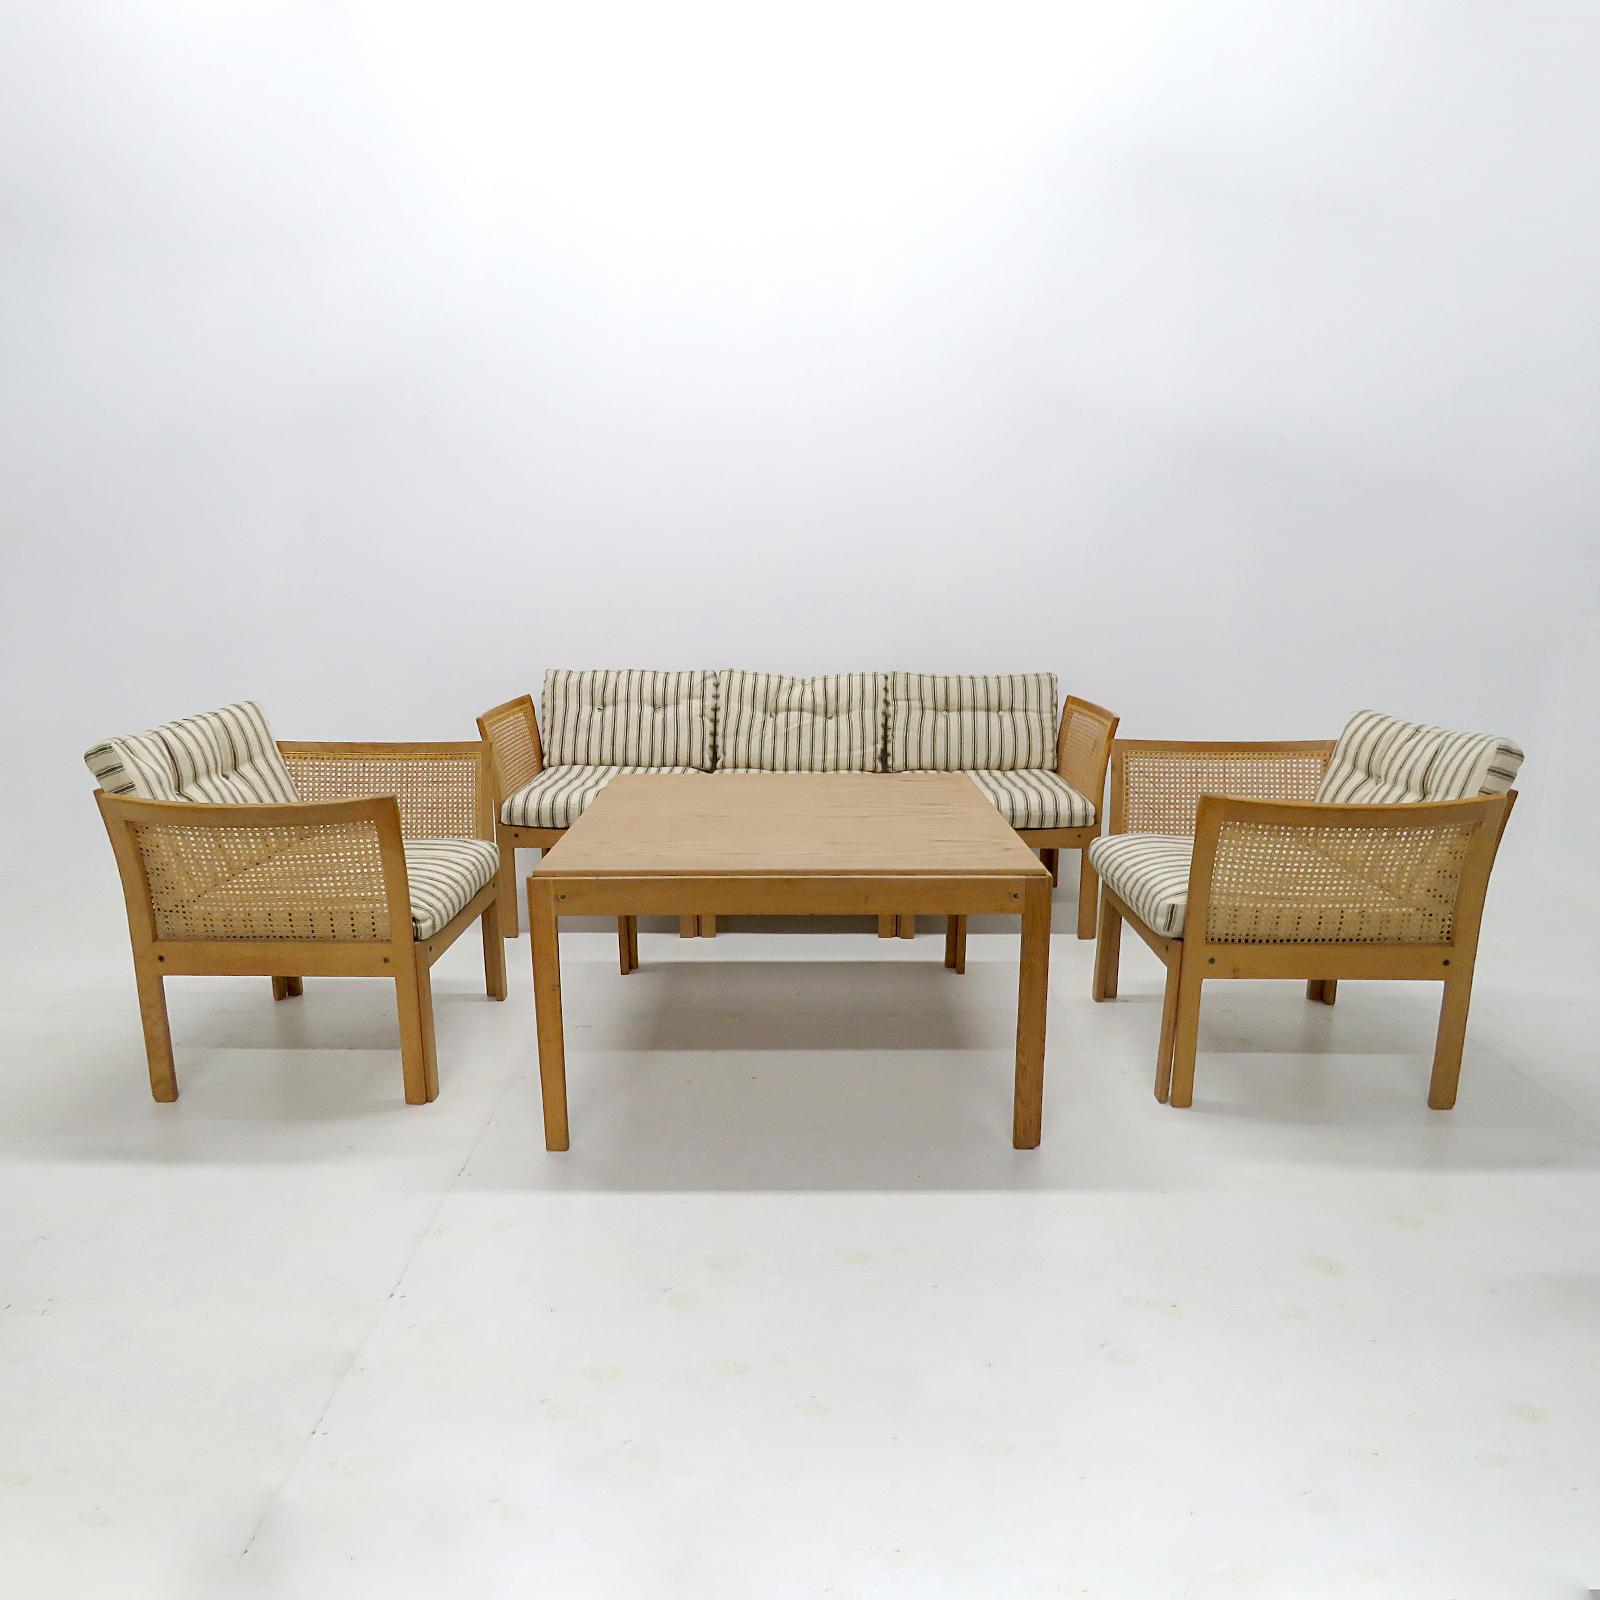 Wunderschönes Wohnzimmerset von Illum Wikkelsø für C.F. Christensen, Silkeborg, Dänemark, 1960, bestehend aus zwei Sesseln, einem Dreisitzer-Sofa (mit weiteren möglichen Konfigurationen) und einem Couchtisch mit Rahmen aus Eichenholz sowie Rücken-